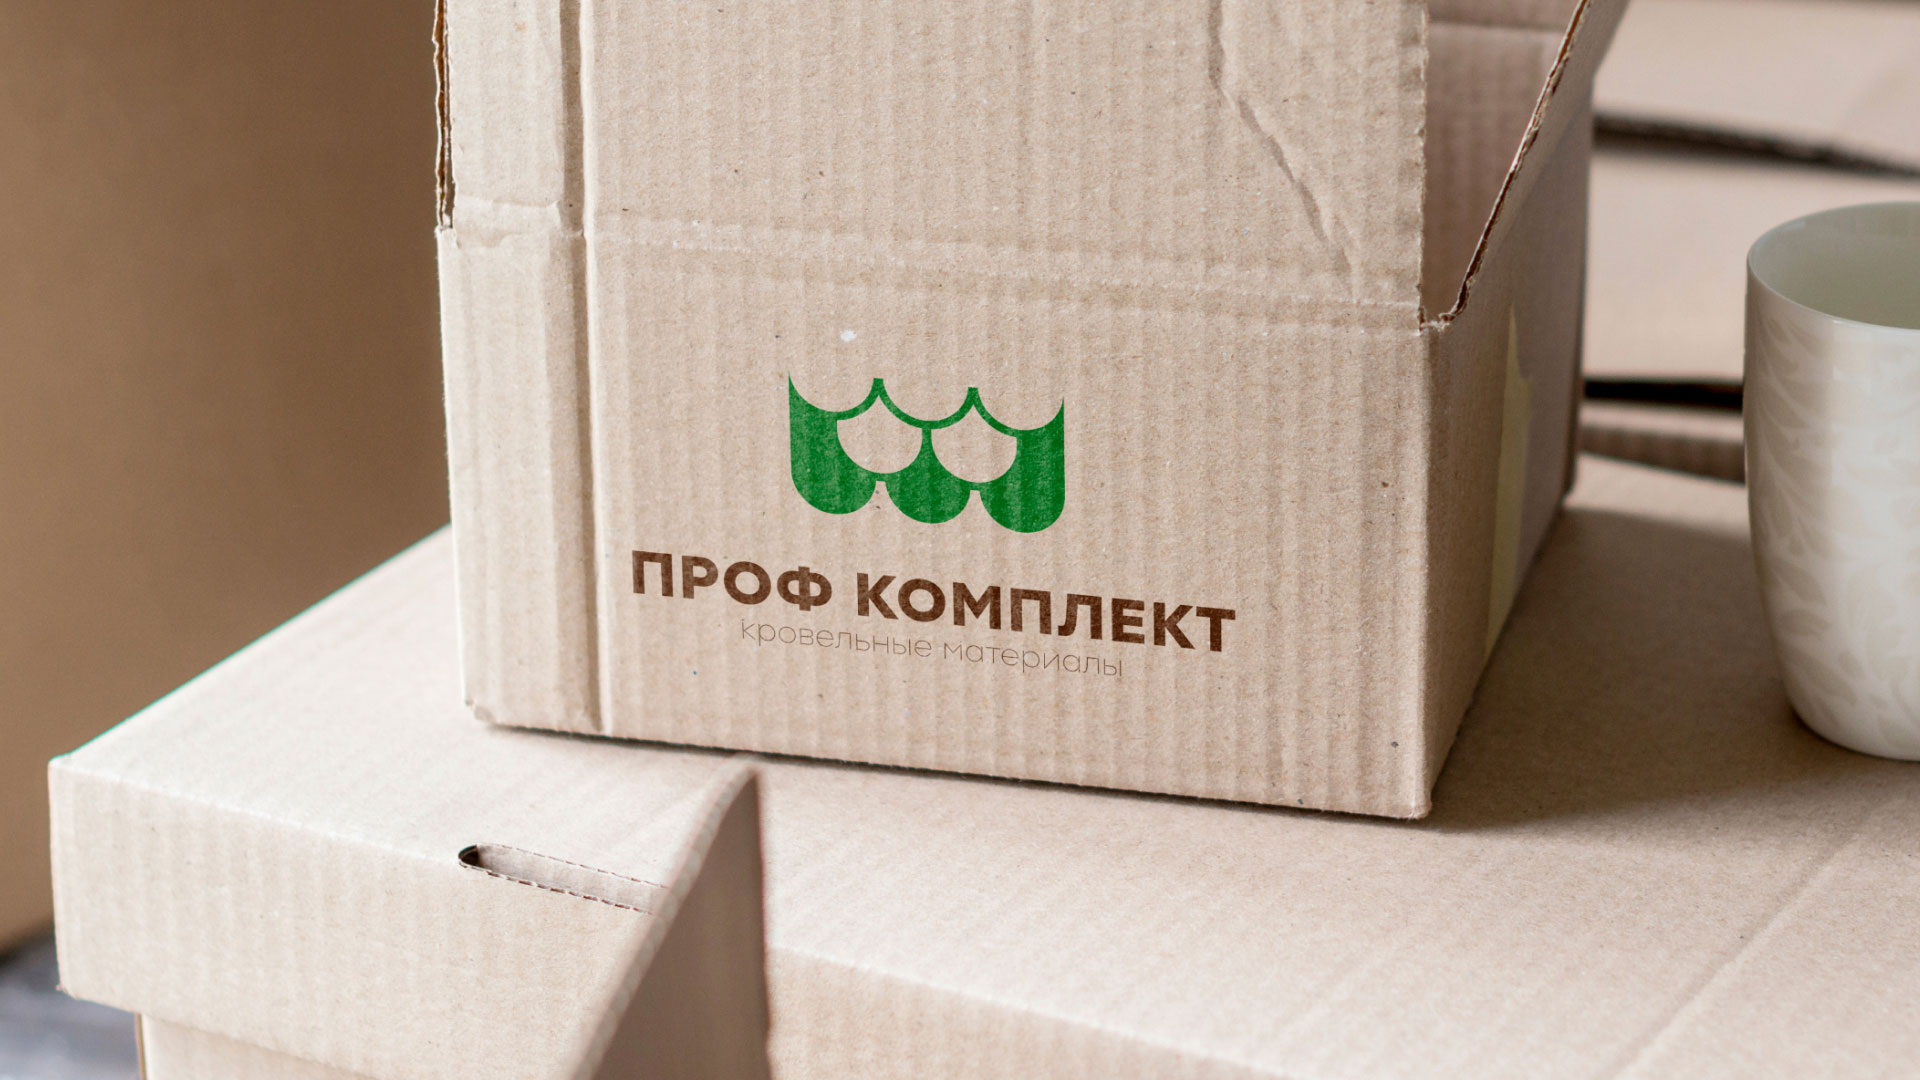 Создание логотипа компании «Проф Комплект» в Ярцево